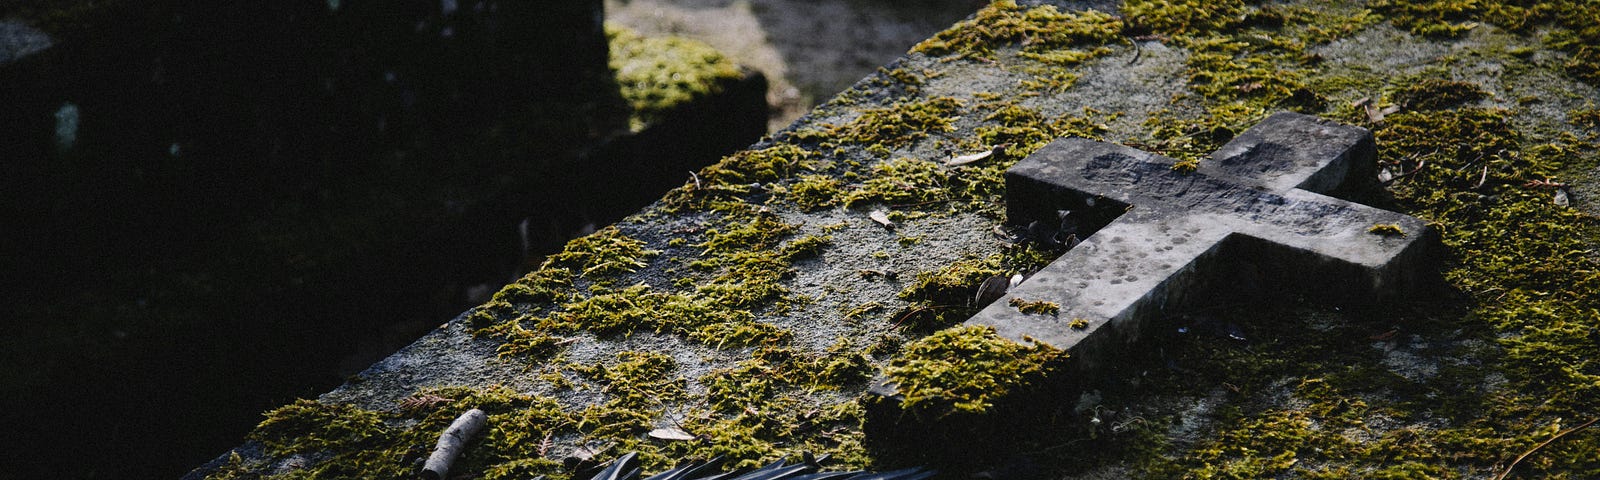 A mossy tomb lid